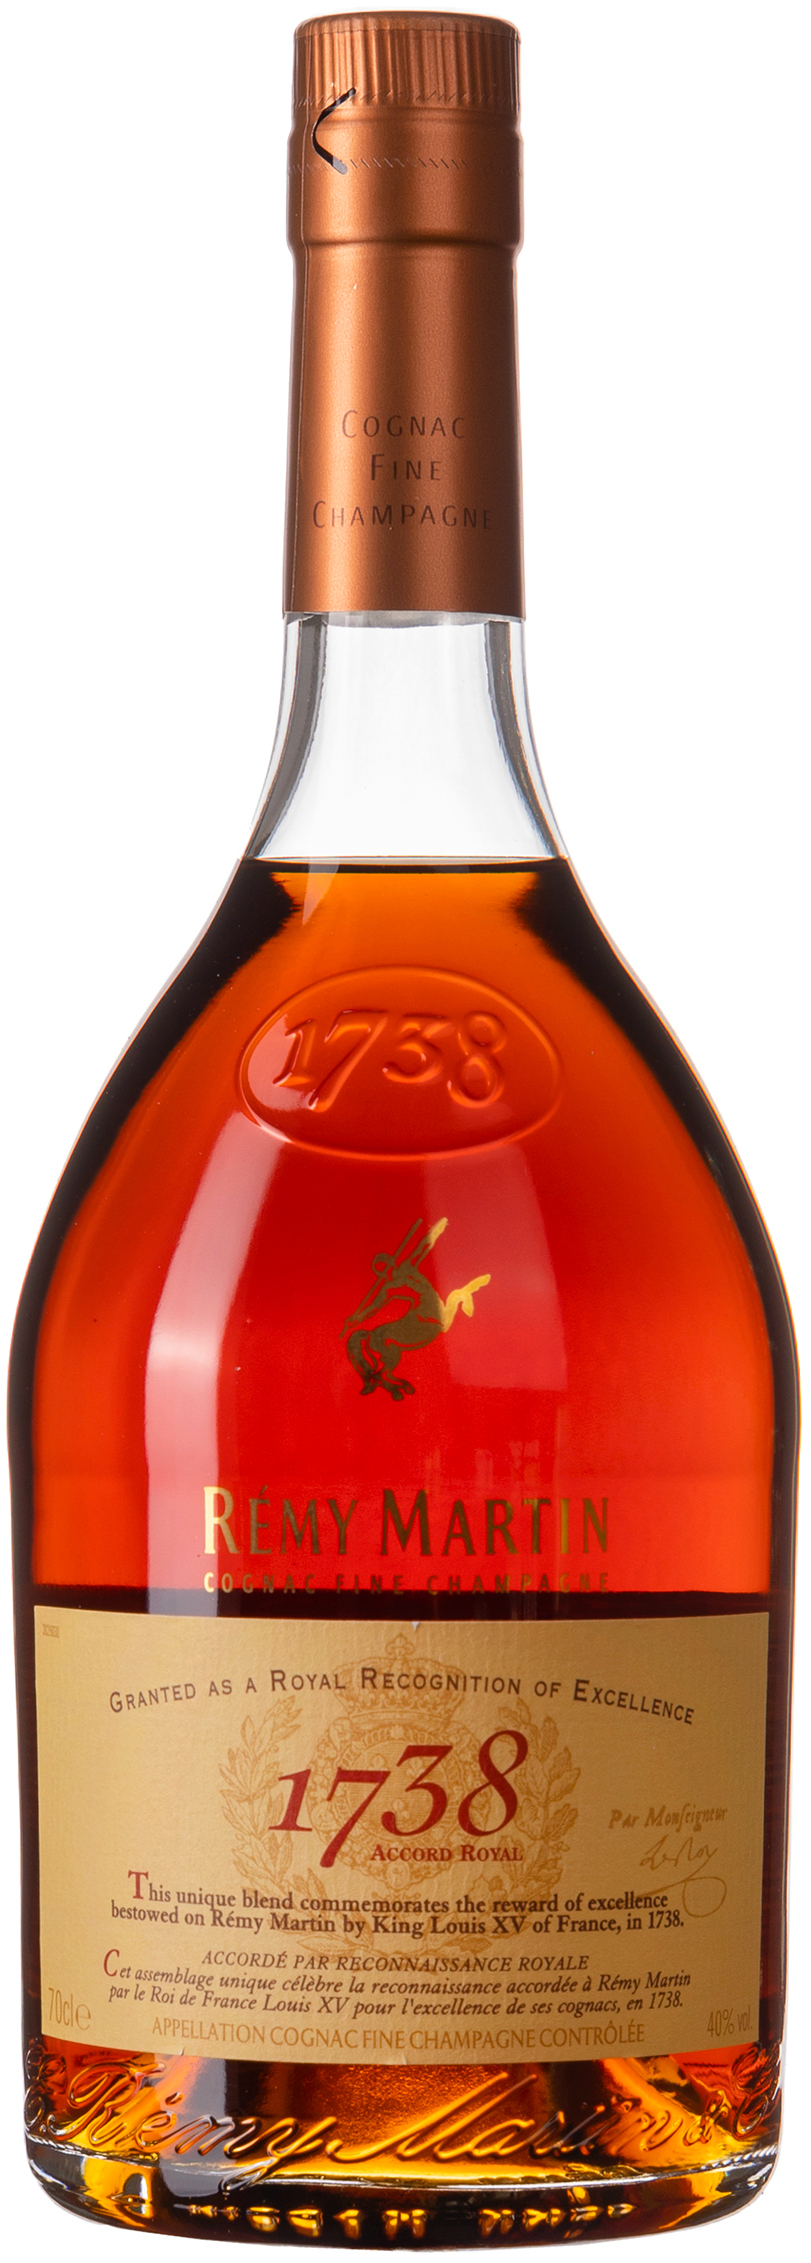 Remy Martin 1738 Accord Royal Cognac 40% vol. 0,7L